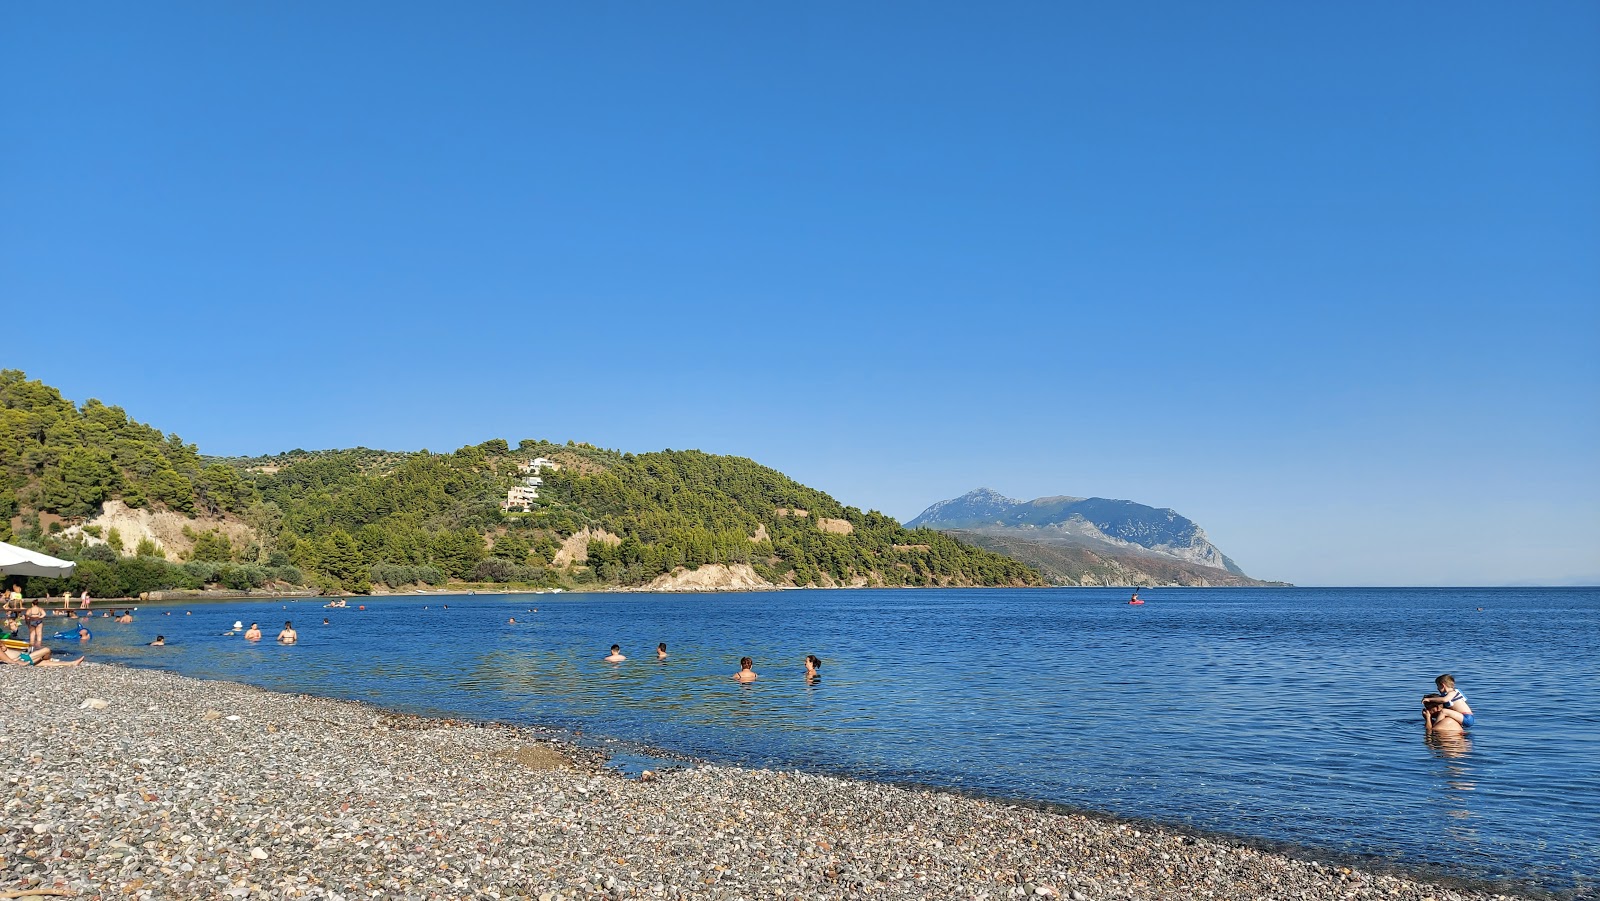 Koxyli beach'in fotoğrafı gri ince çakıl taş yüzey ile